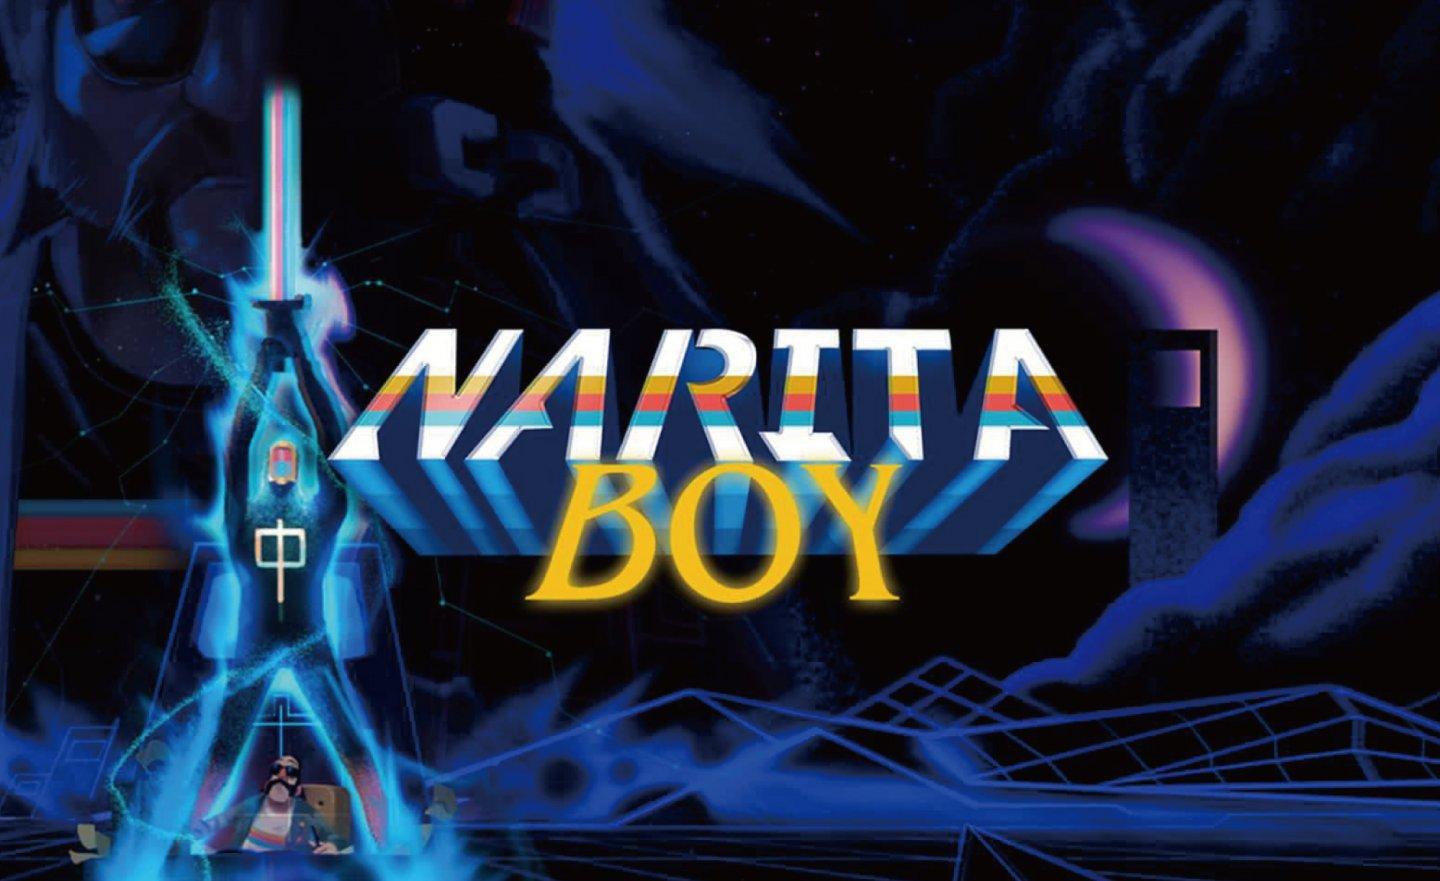 【限時免費】點陣動作冒險遊戲《Narita Boy 成田男孩》放送中，2022 年 11 月 25 日 22:00 截止